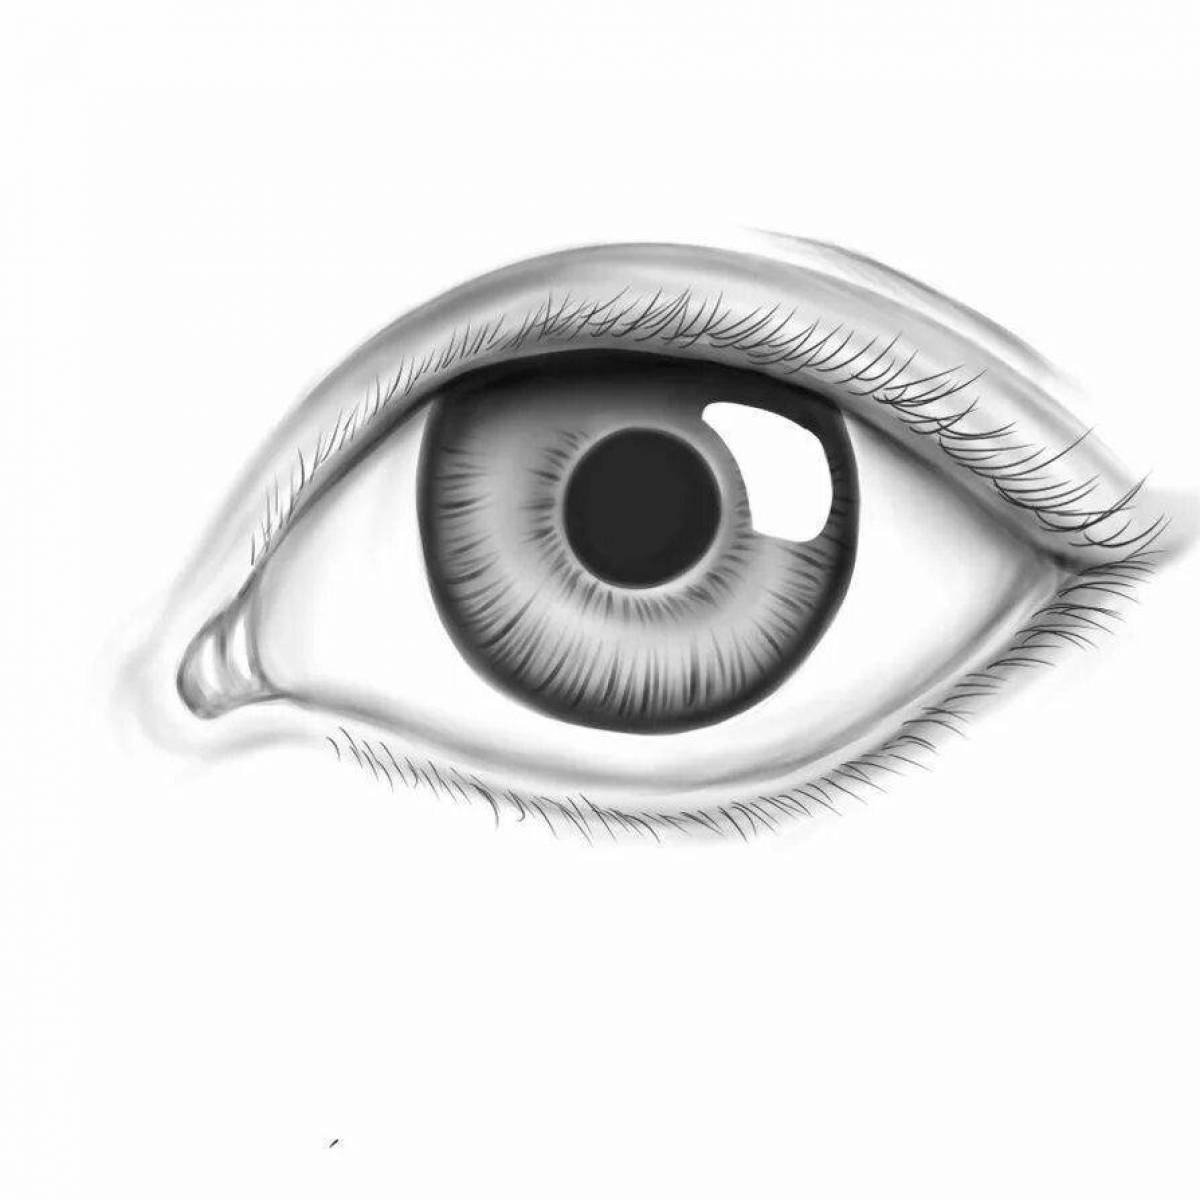 Страница раскраски человеческого глаза для обучения зрению